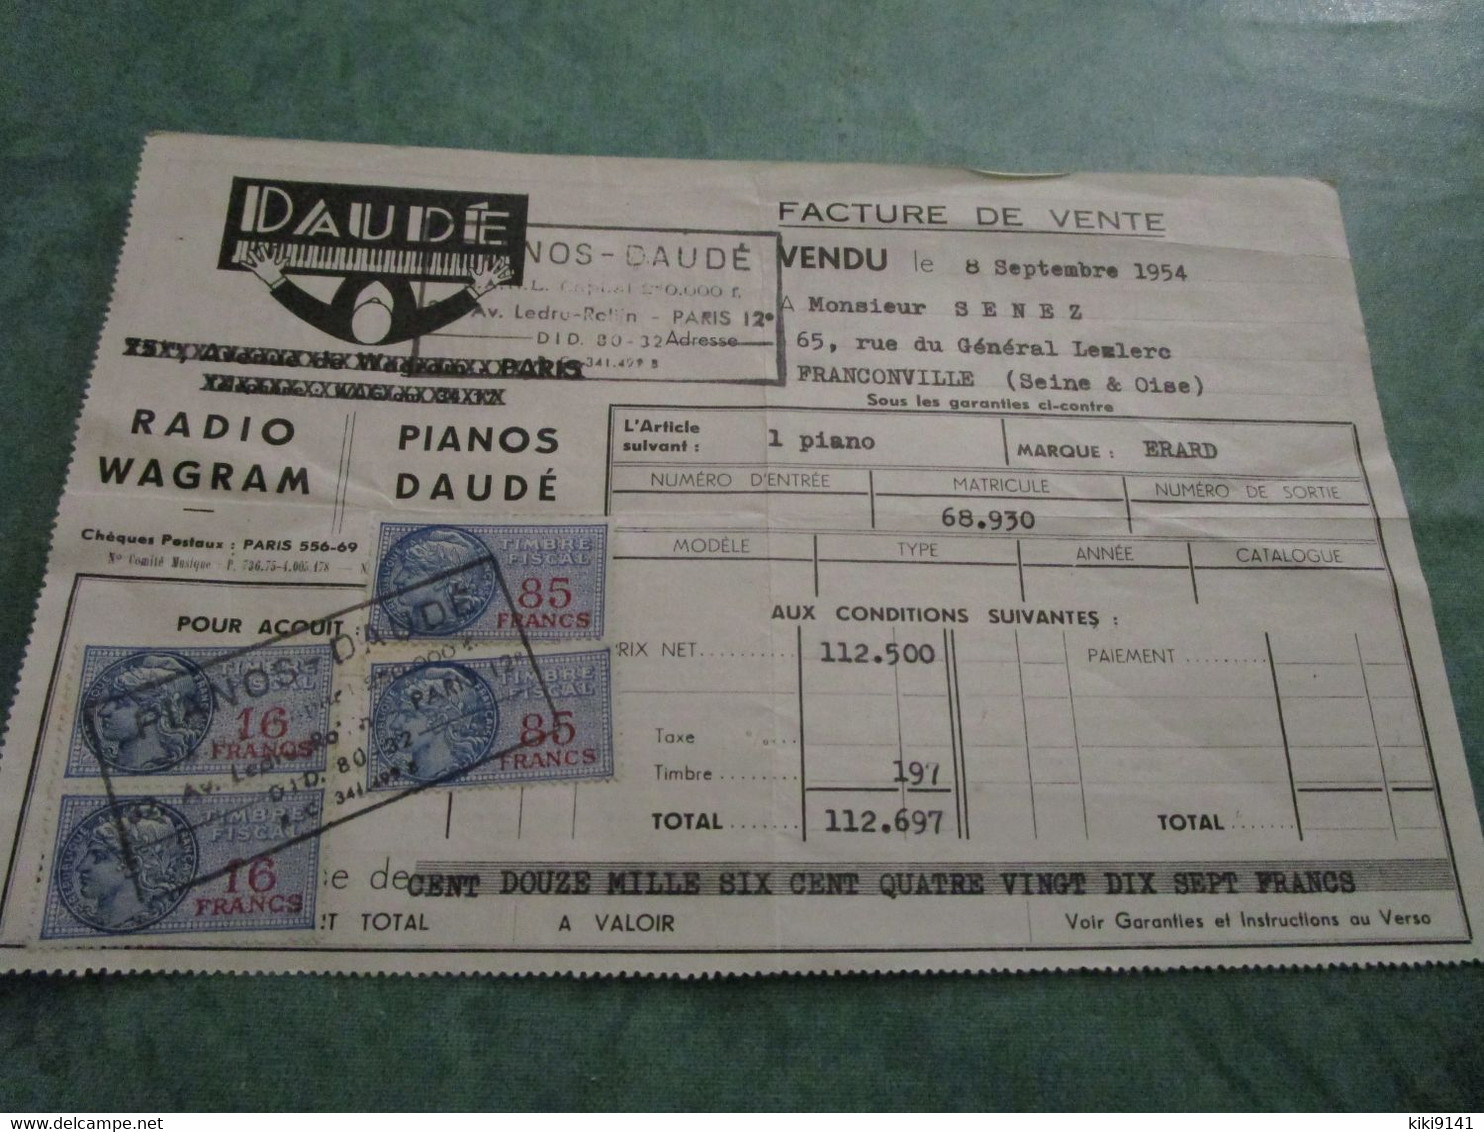 PIANOS DAUDE - Facture De L'achat D'un Piano De Marque ERARD - Musikinstrumente